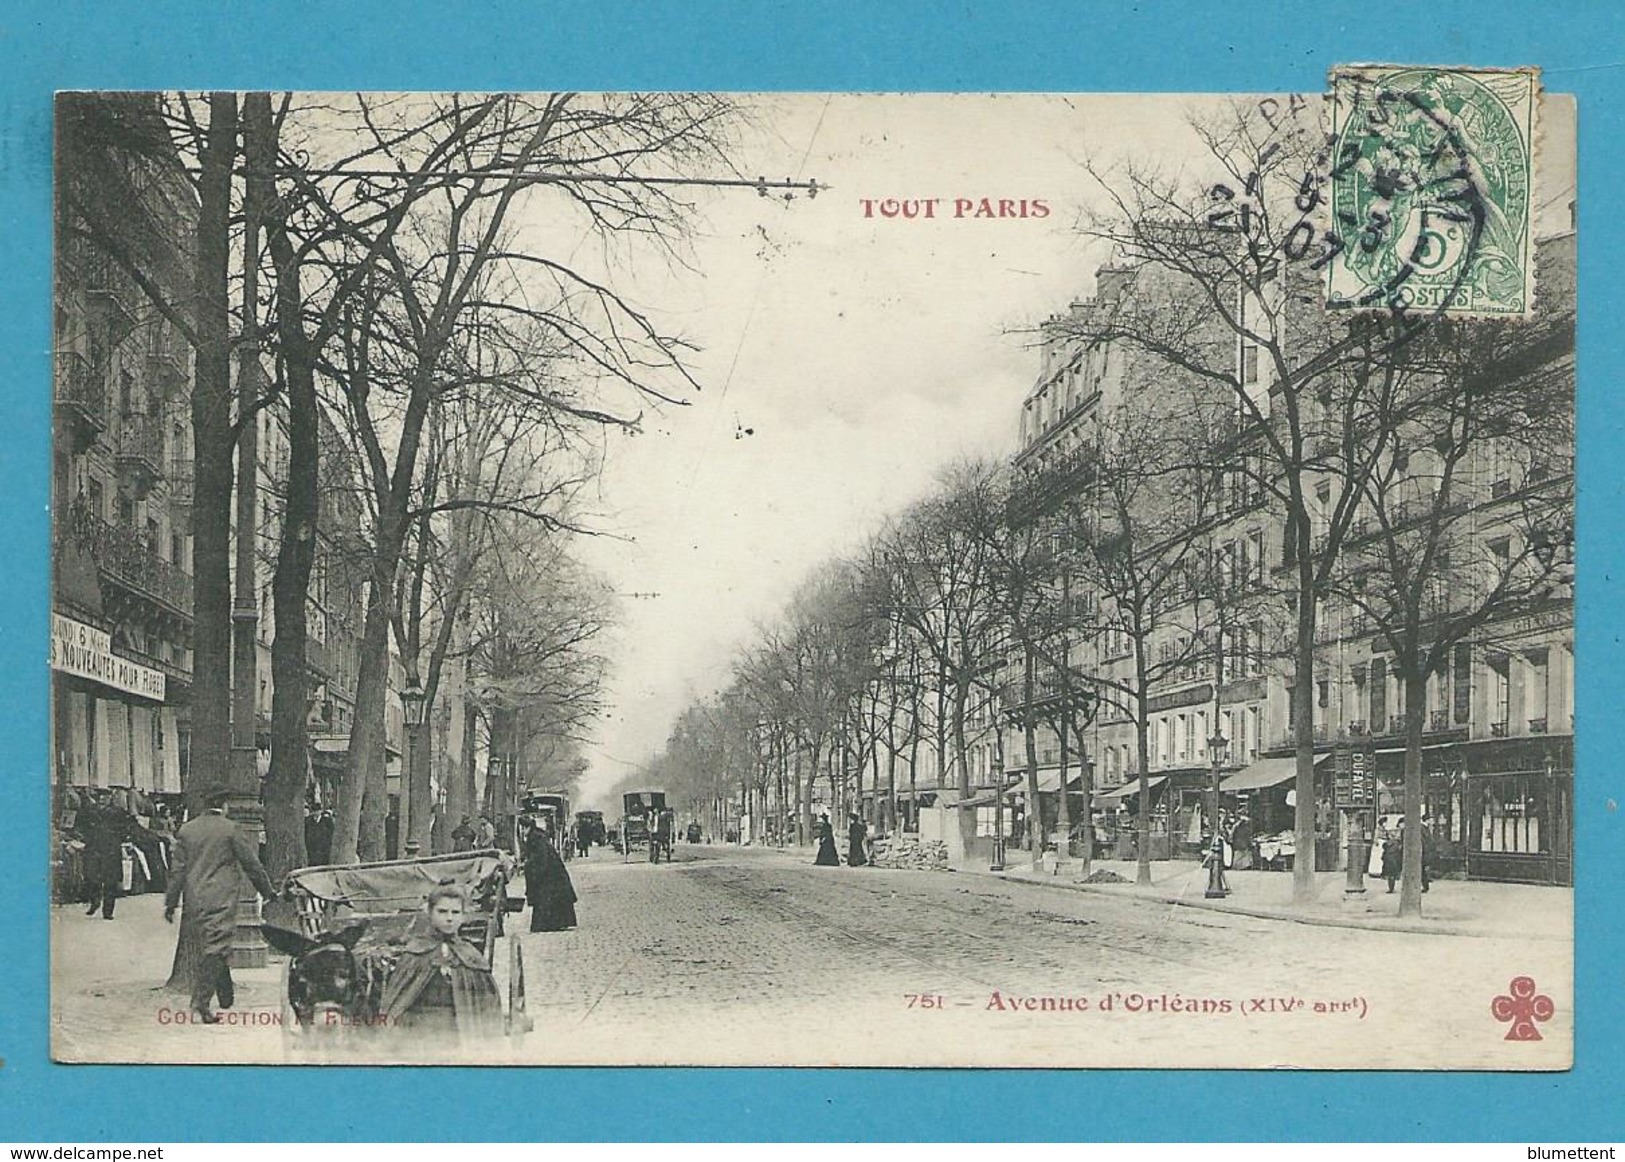 CPA TOUT PARIS 751 - Avenue D'Orléans (XIVème Arrt.) Ed. FLEURY - District 14